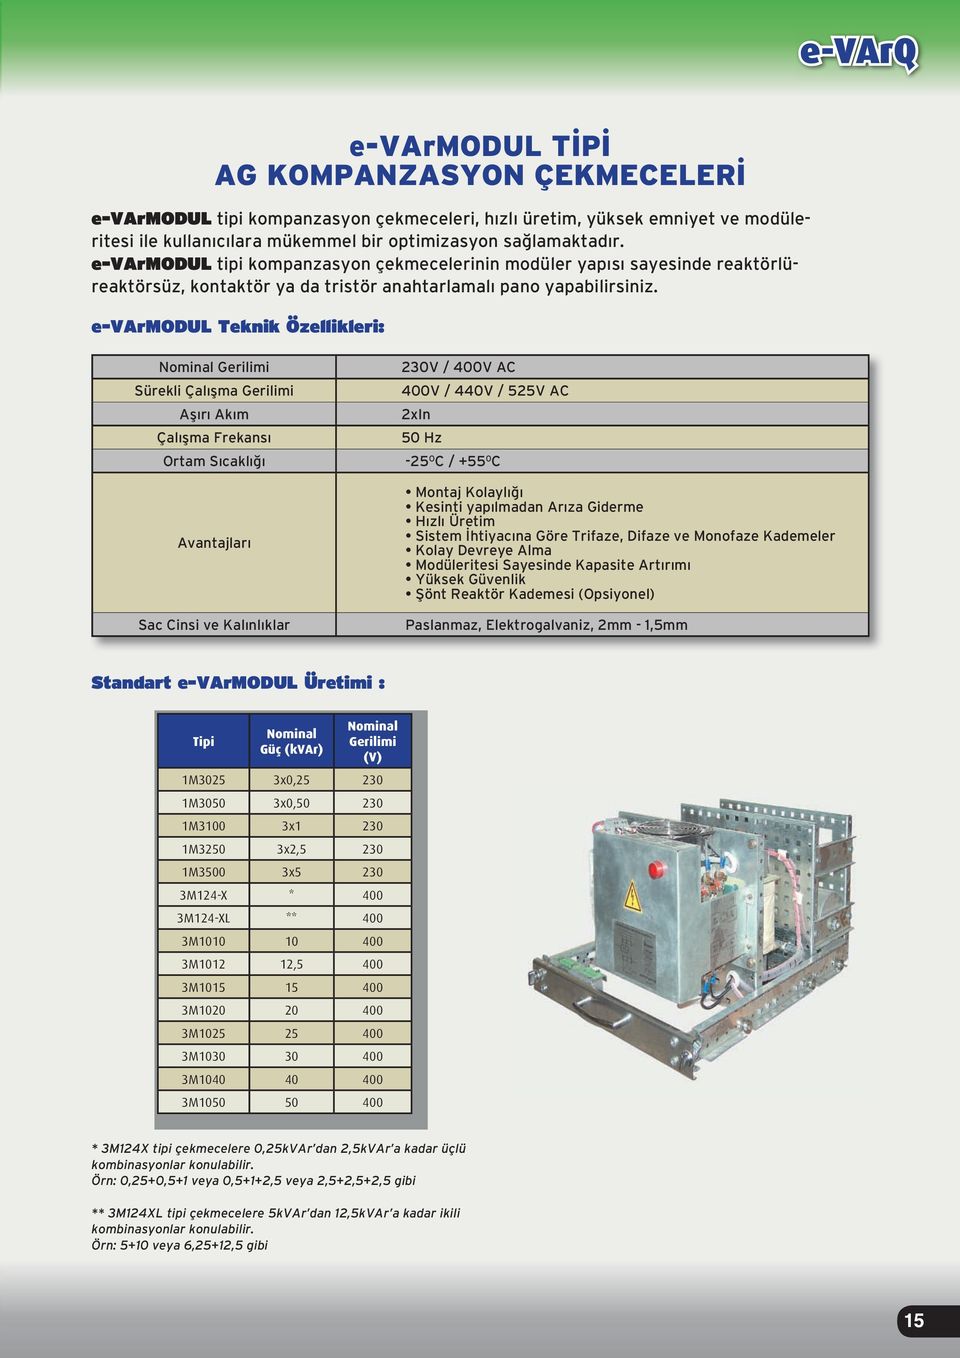 e-varmodul Teknik Özellikleri: Nominal Gerilimi 230V / 400V AC Sürekli Çalışma Gerilimi 400V / 440V / 525V AC Aşırı Akım 2xIn Çalışma Frekansı 50 Hz Ortam Sıcaklığı -25 O C / +55 0 C Avantajları